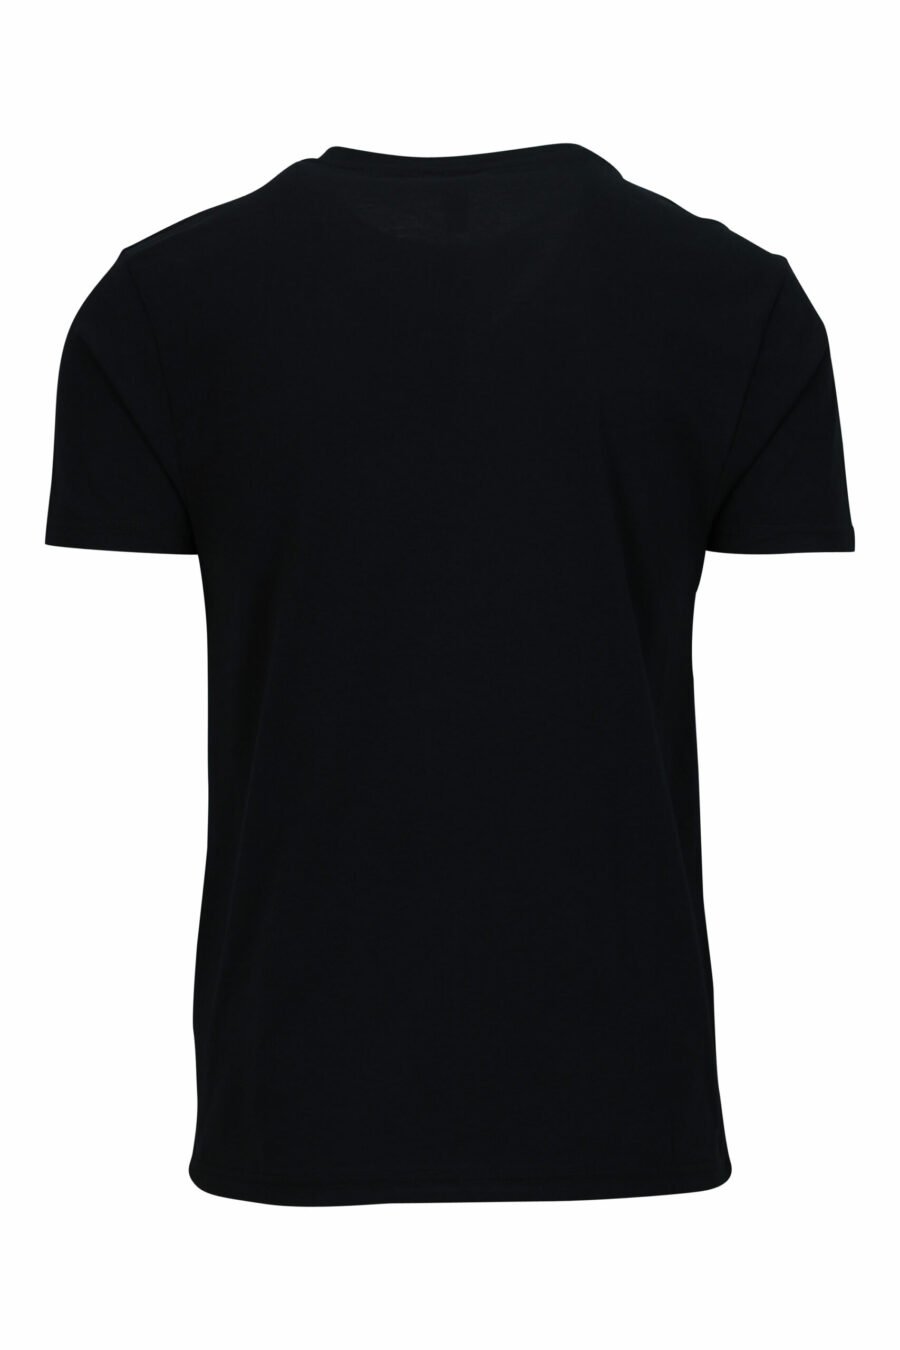 T-shirt preta com logótipo branco e pormenor de fita vermelha nos ombros - 667113604275 1 scaled